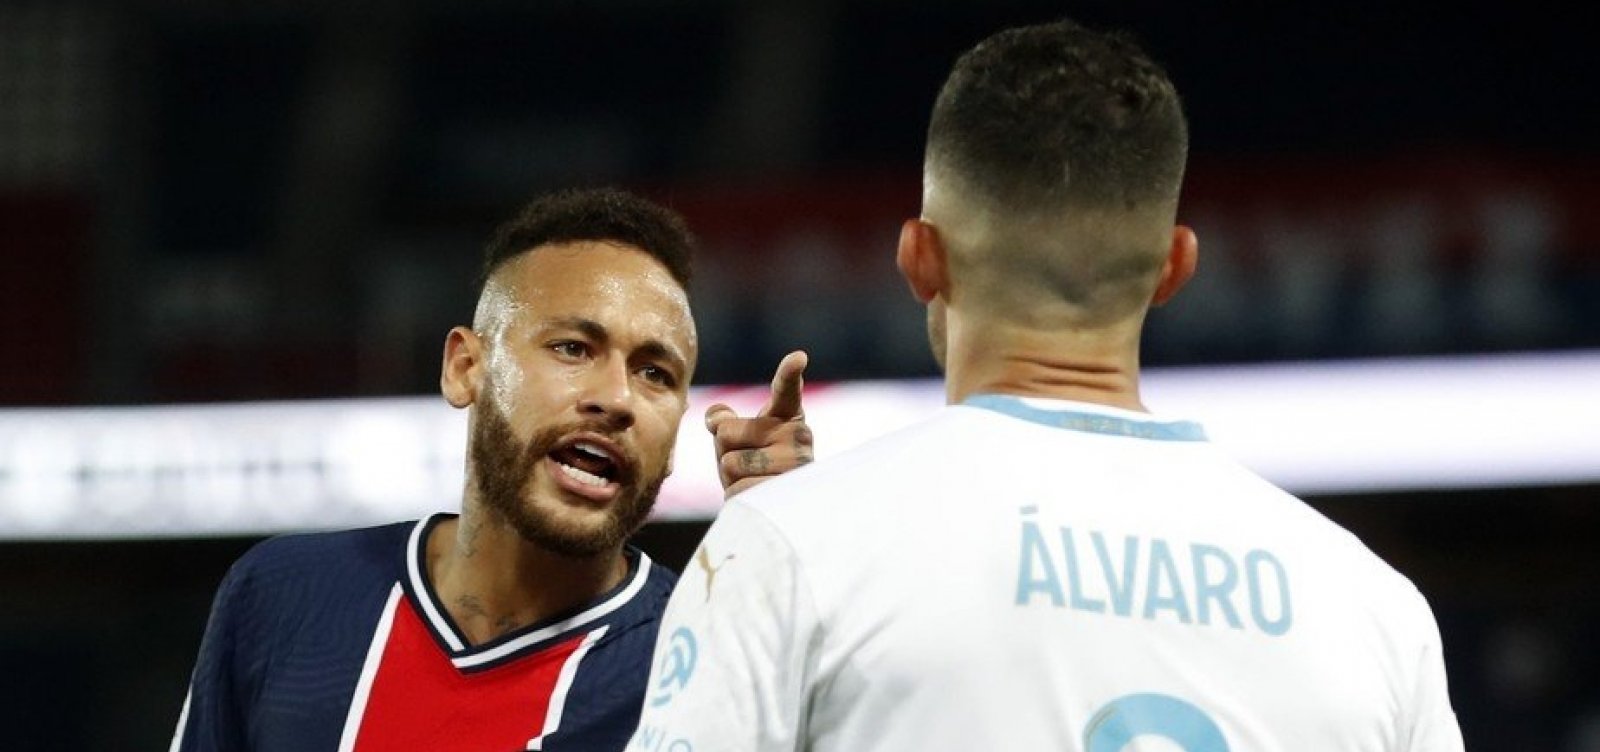 Expulso, Neymar acusa adversário de racismo: 'Único arrependimento que tenho é por não ter dado na cara desse babaca'